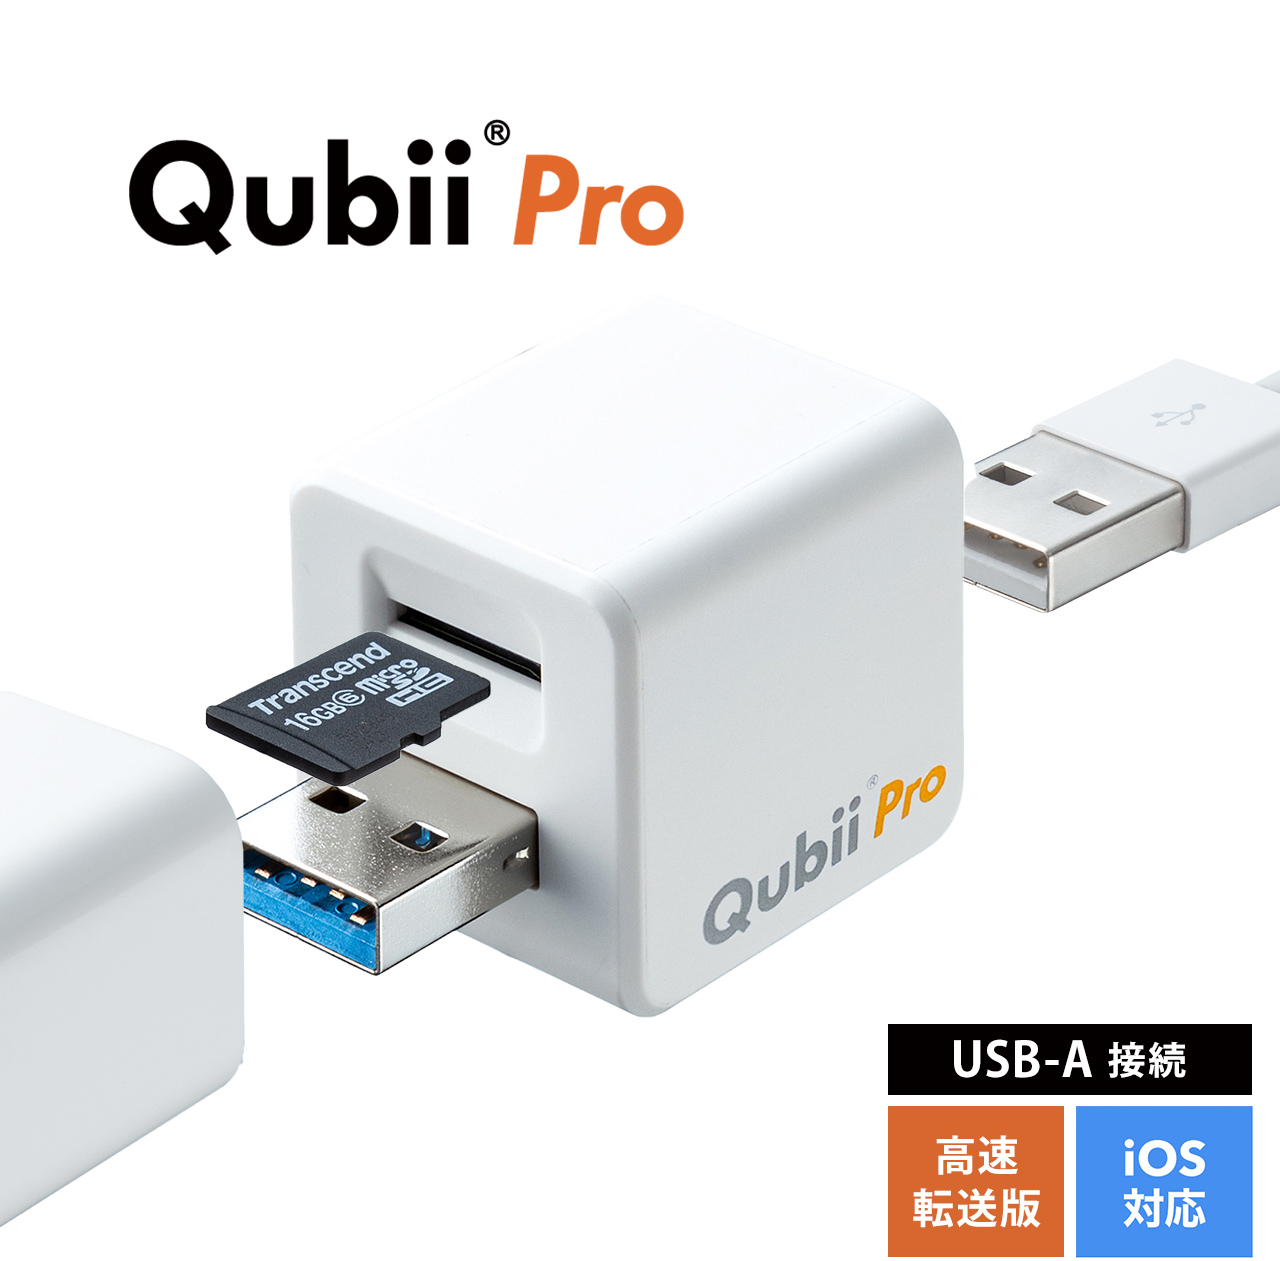 Iphoneカードリーダー バックアップ Microsd Qubii Pro Ipad 充電 カードリーダー 簡単接続 Usb3 1 Gen1 ファイルアプリ対応 ネット接続不要 ホワイト 400 Adrip011wの販売商品 通販ならサンワダイレクト